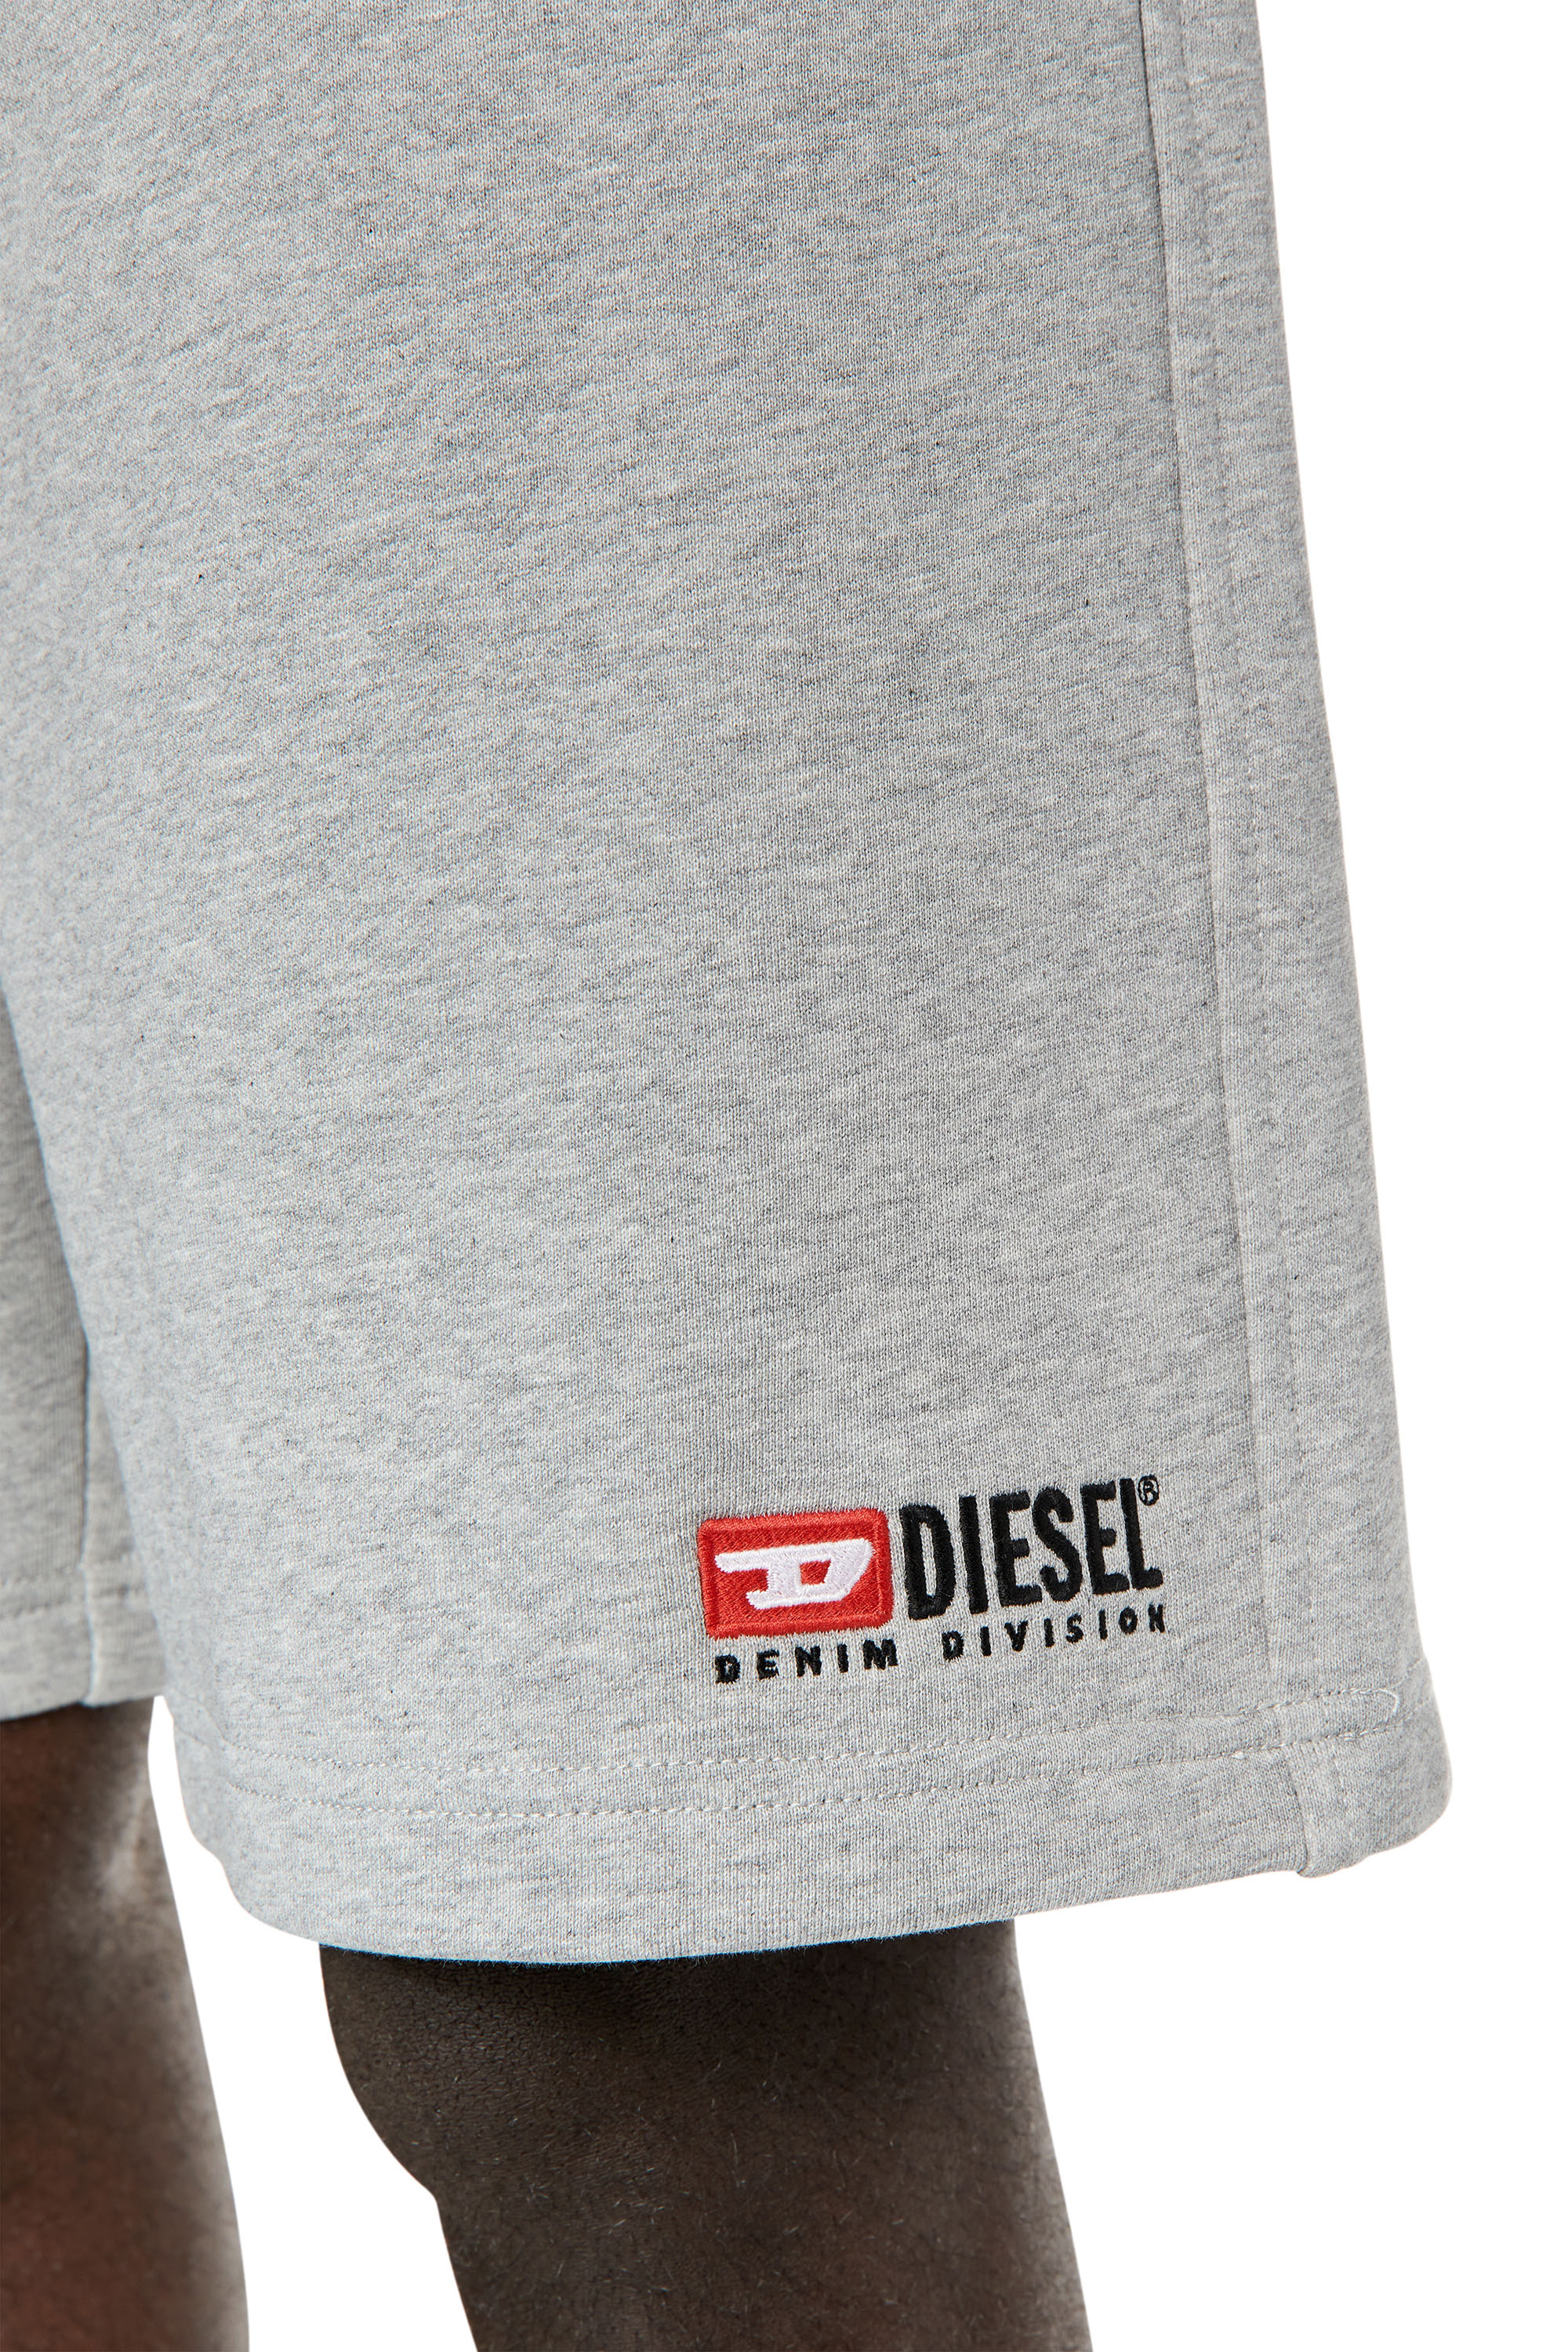 Diesel - P-CROWN-DIV, Grey - Image 3